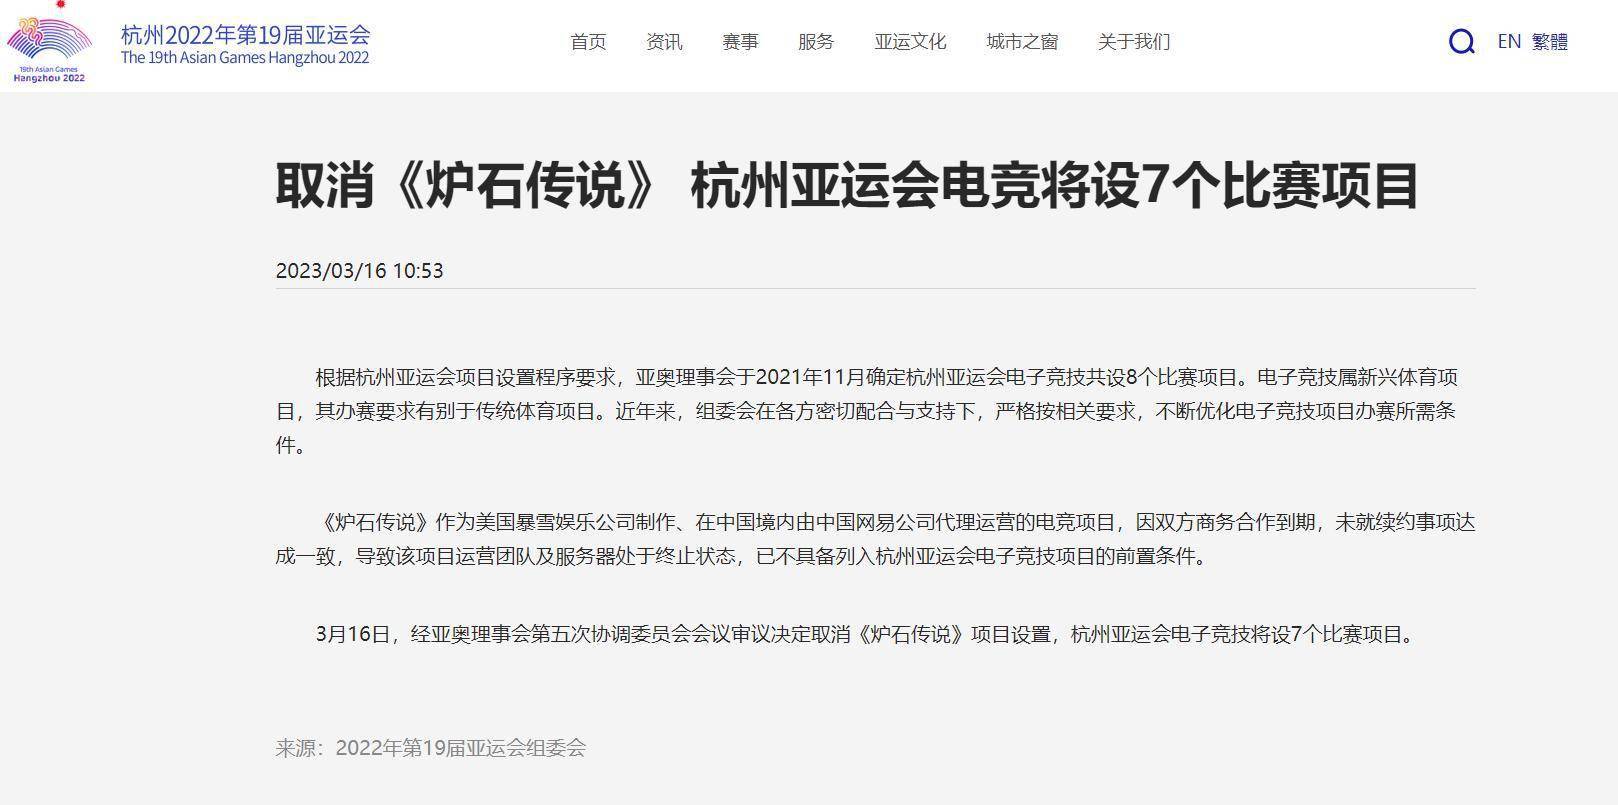 因暴雪中国游戏服务器关闭，炉石传说被移出杭州亚运会项目。